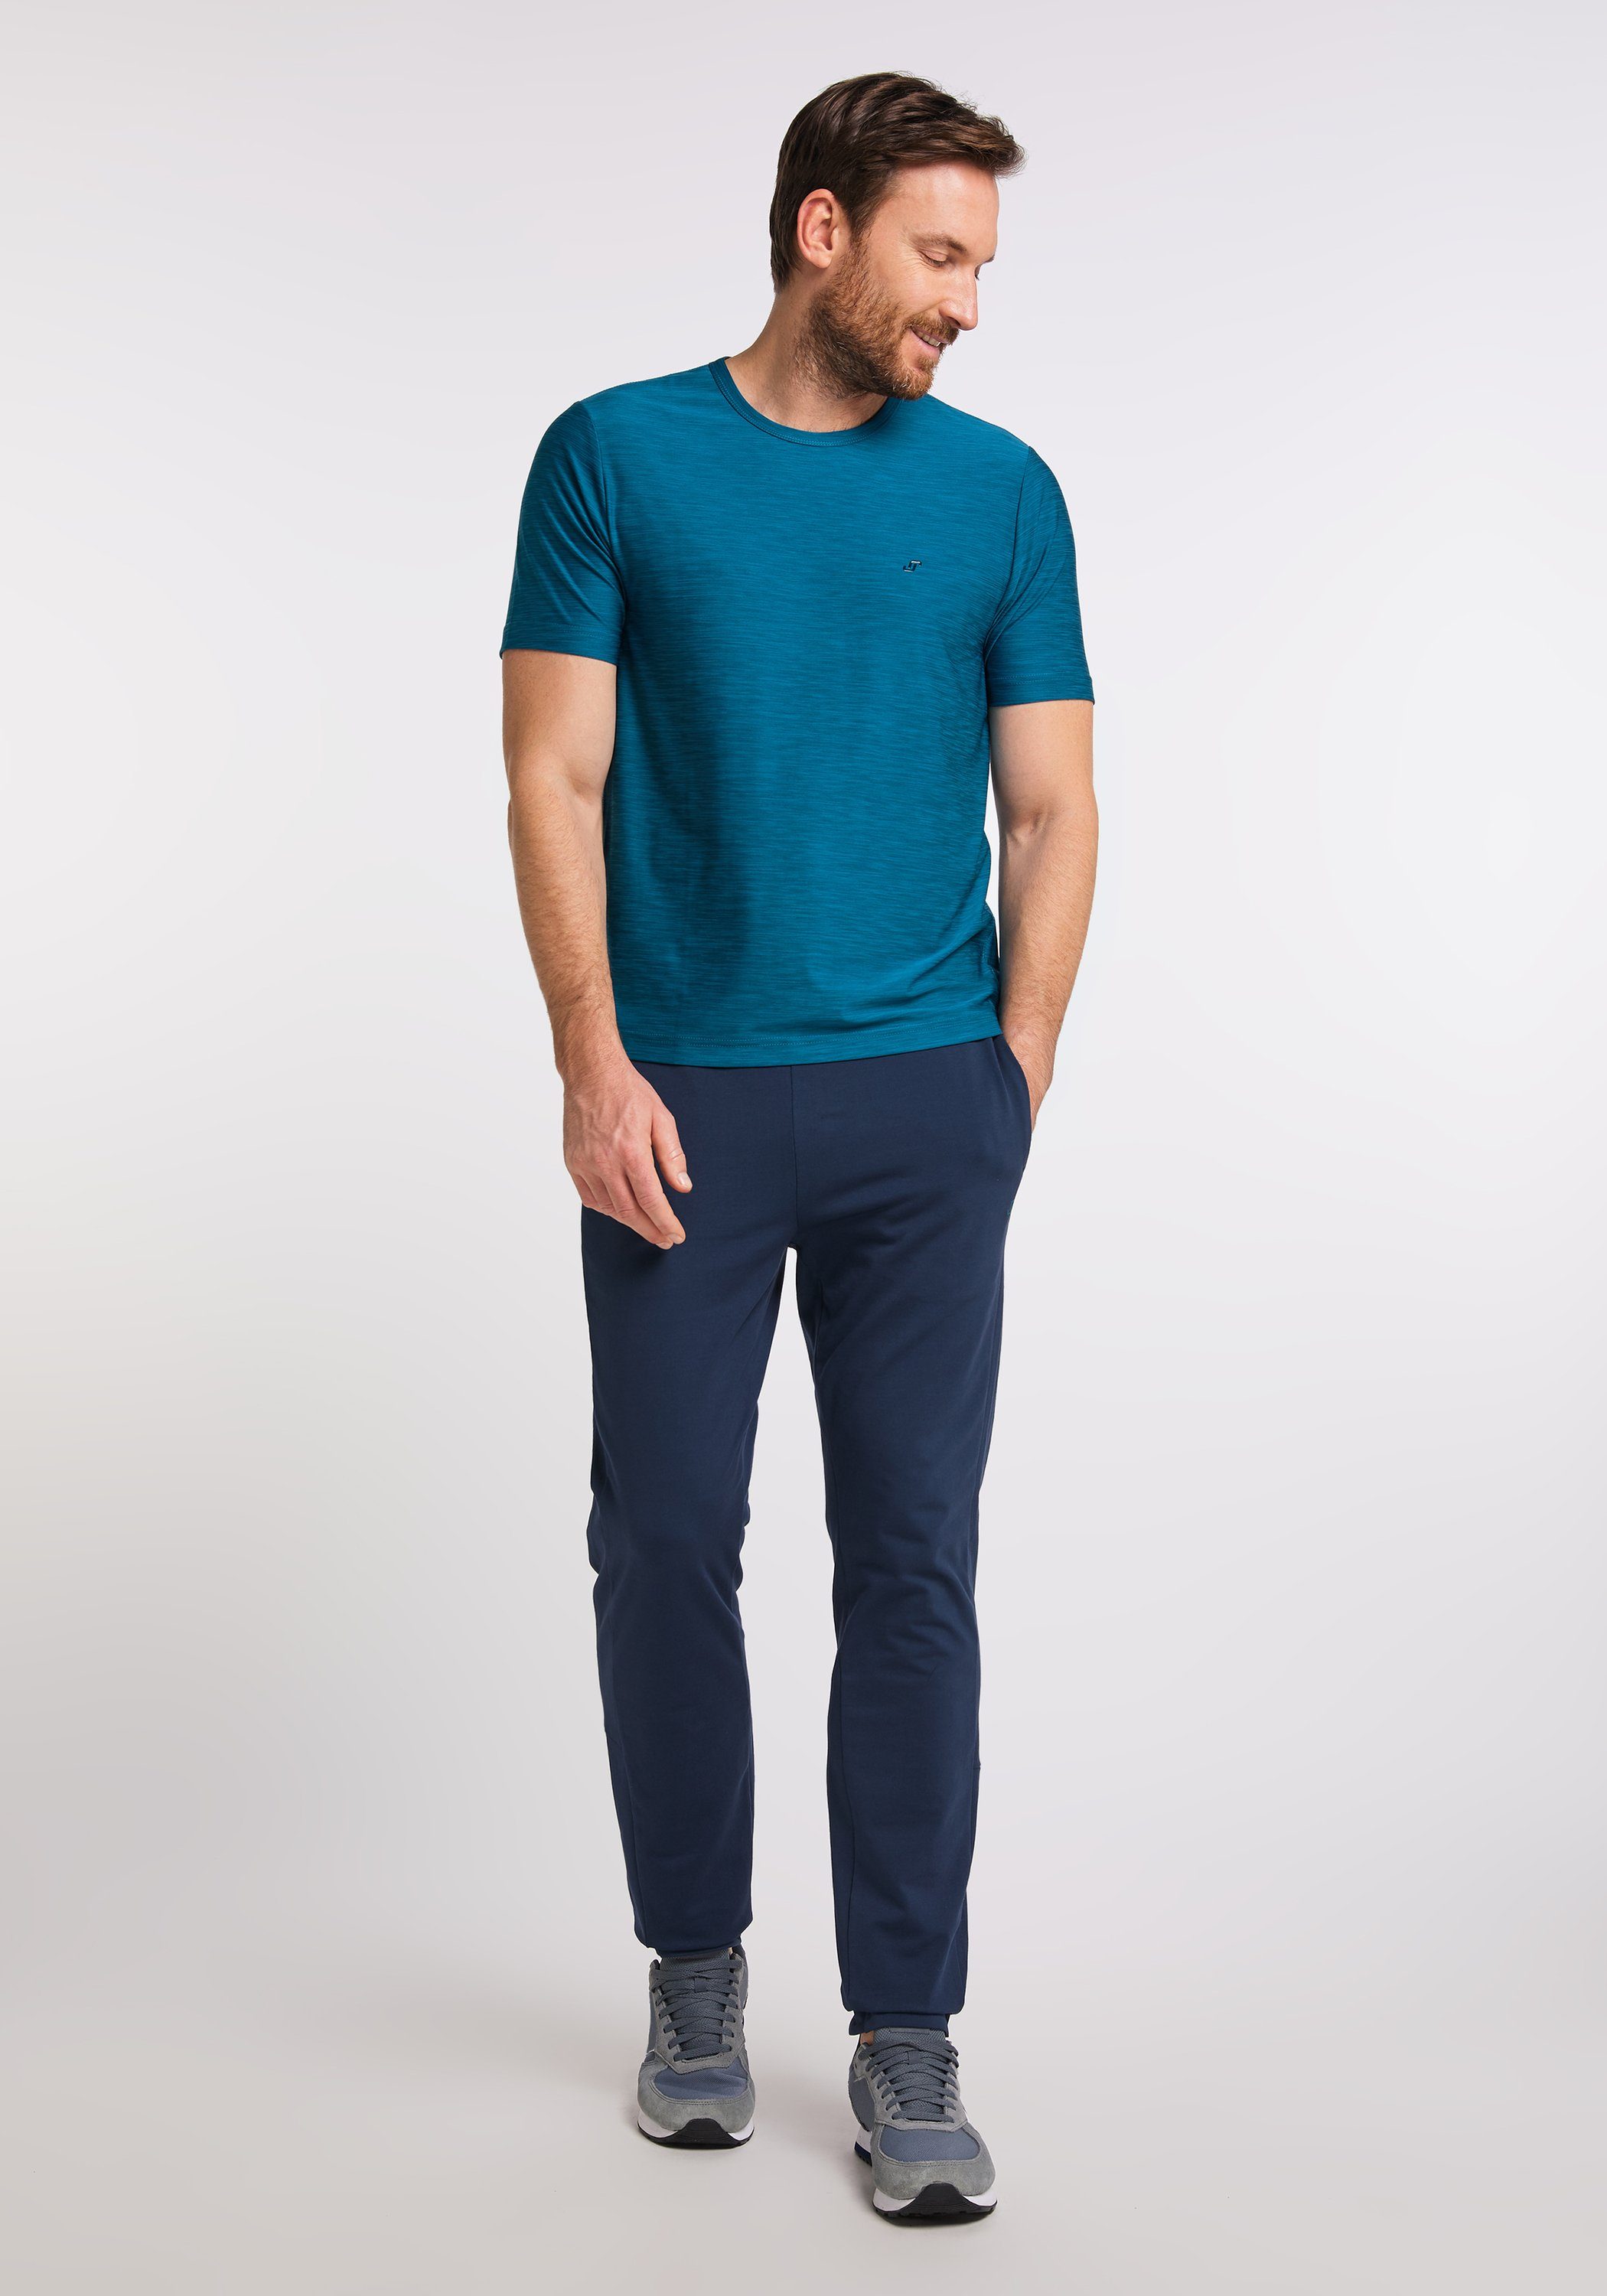 JOY & FUN deep melange T-Shirt Joy Sportswear VITUS turquoise T-Shirt